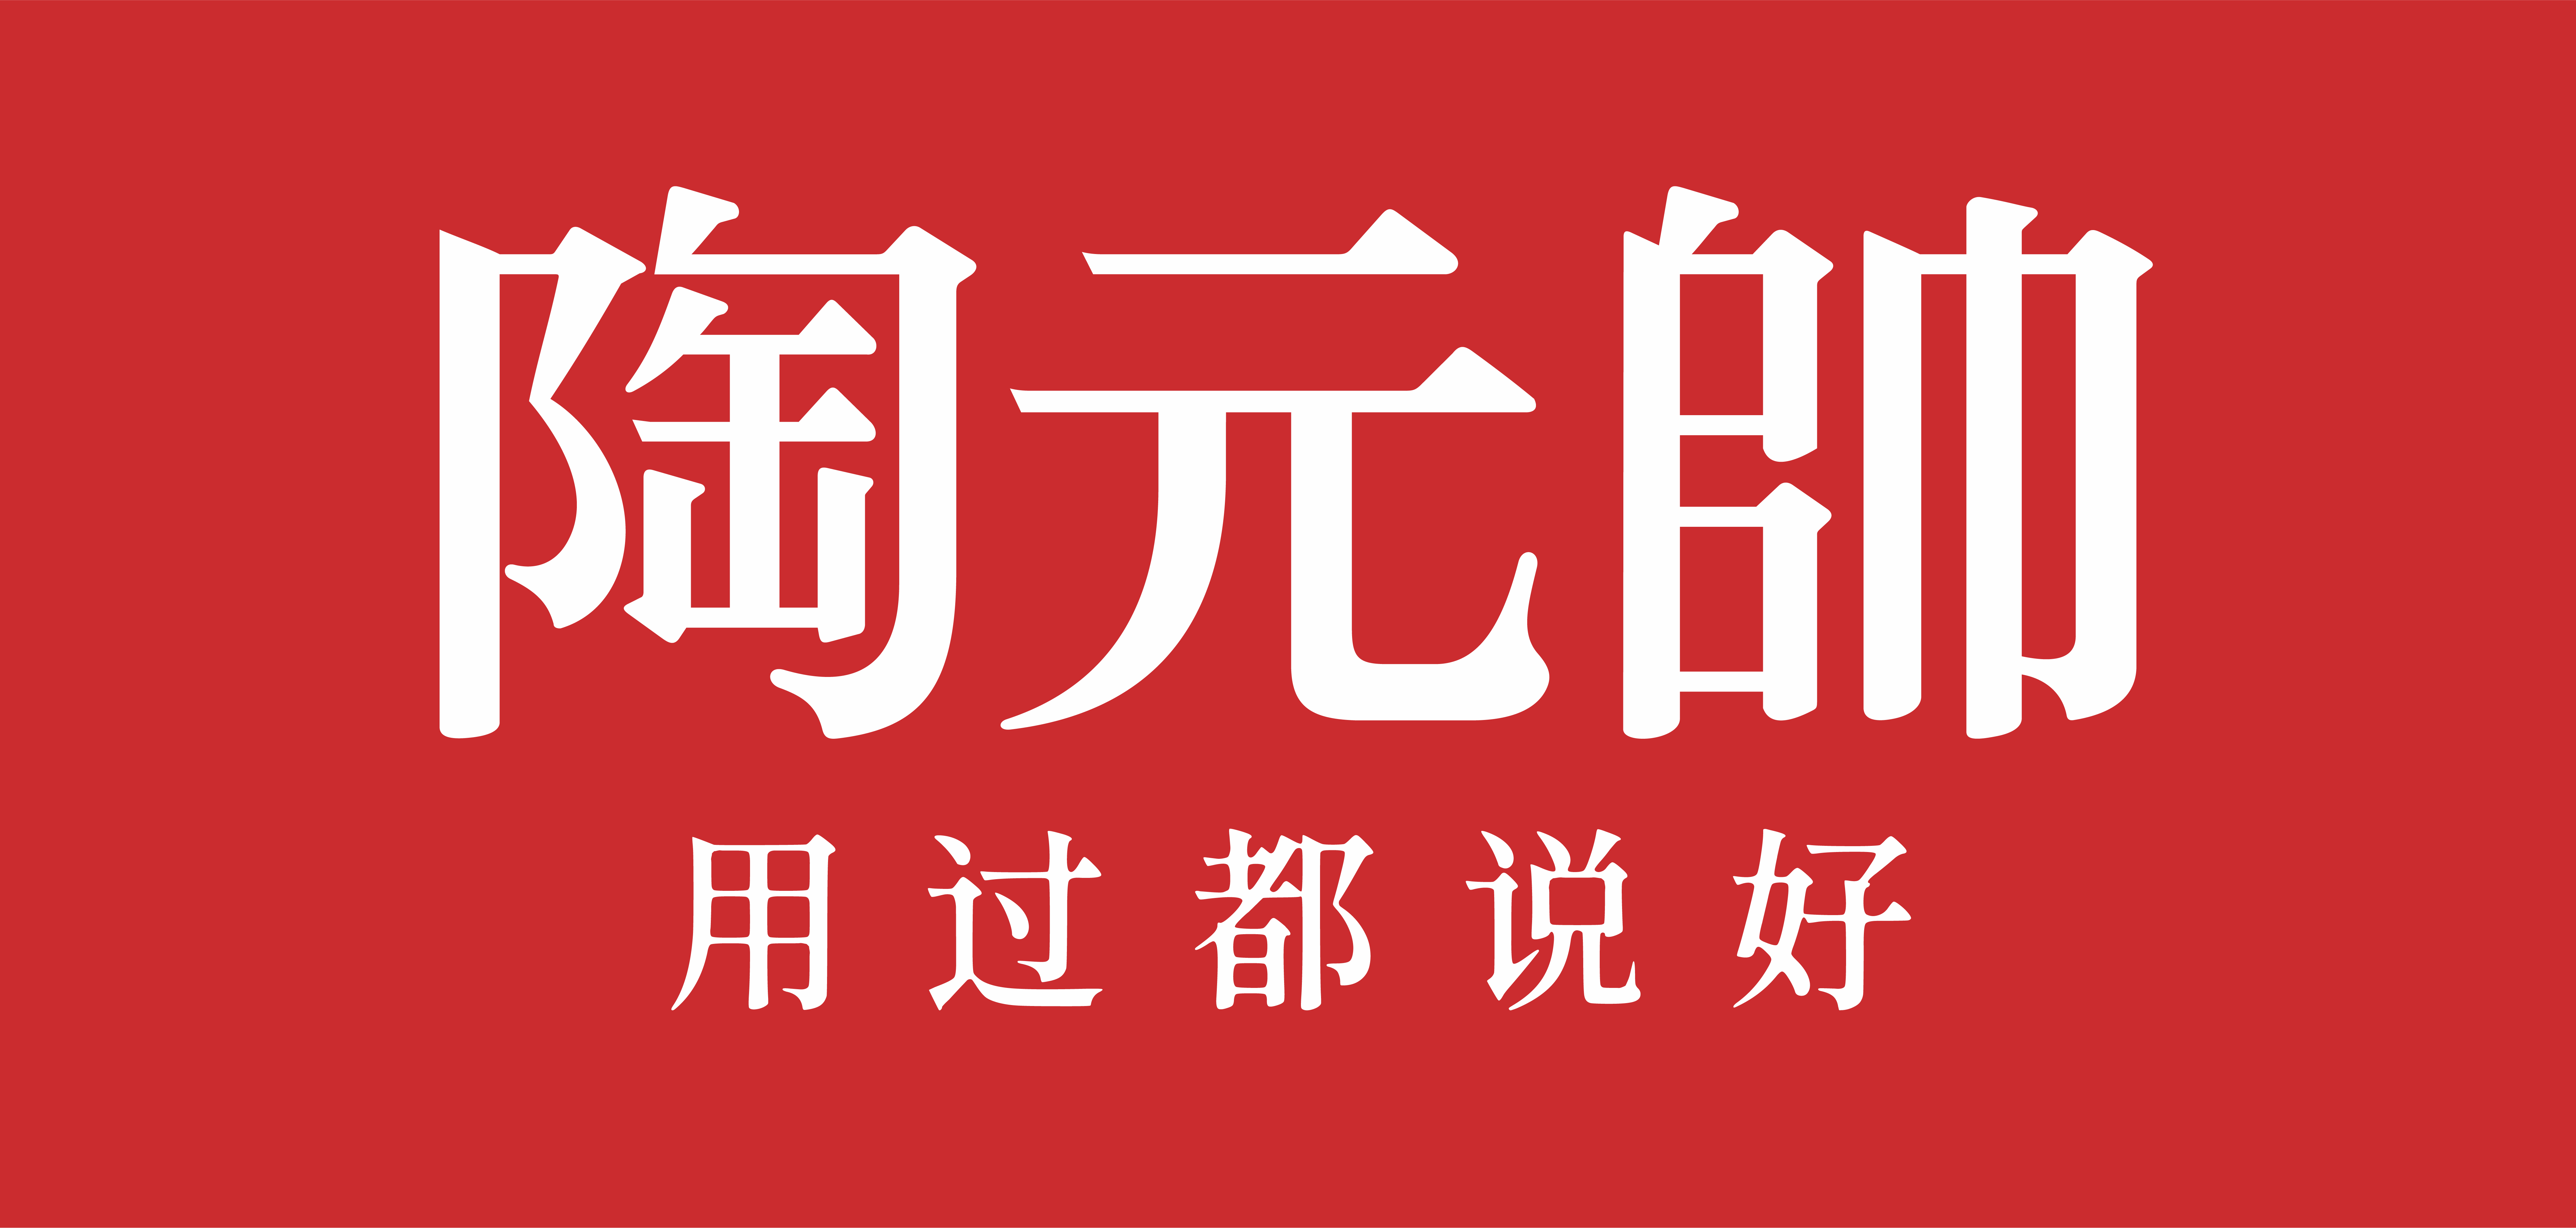 陶元帥瓷磚logo